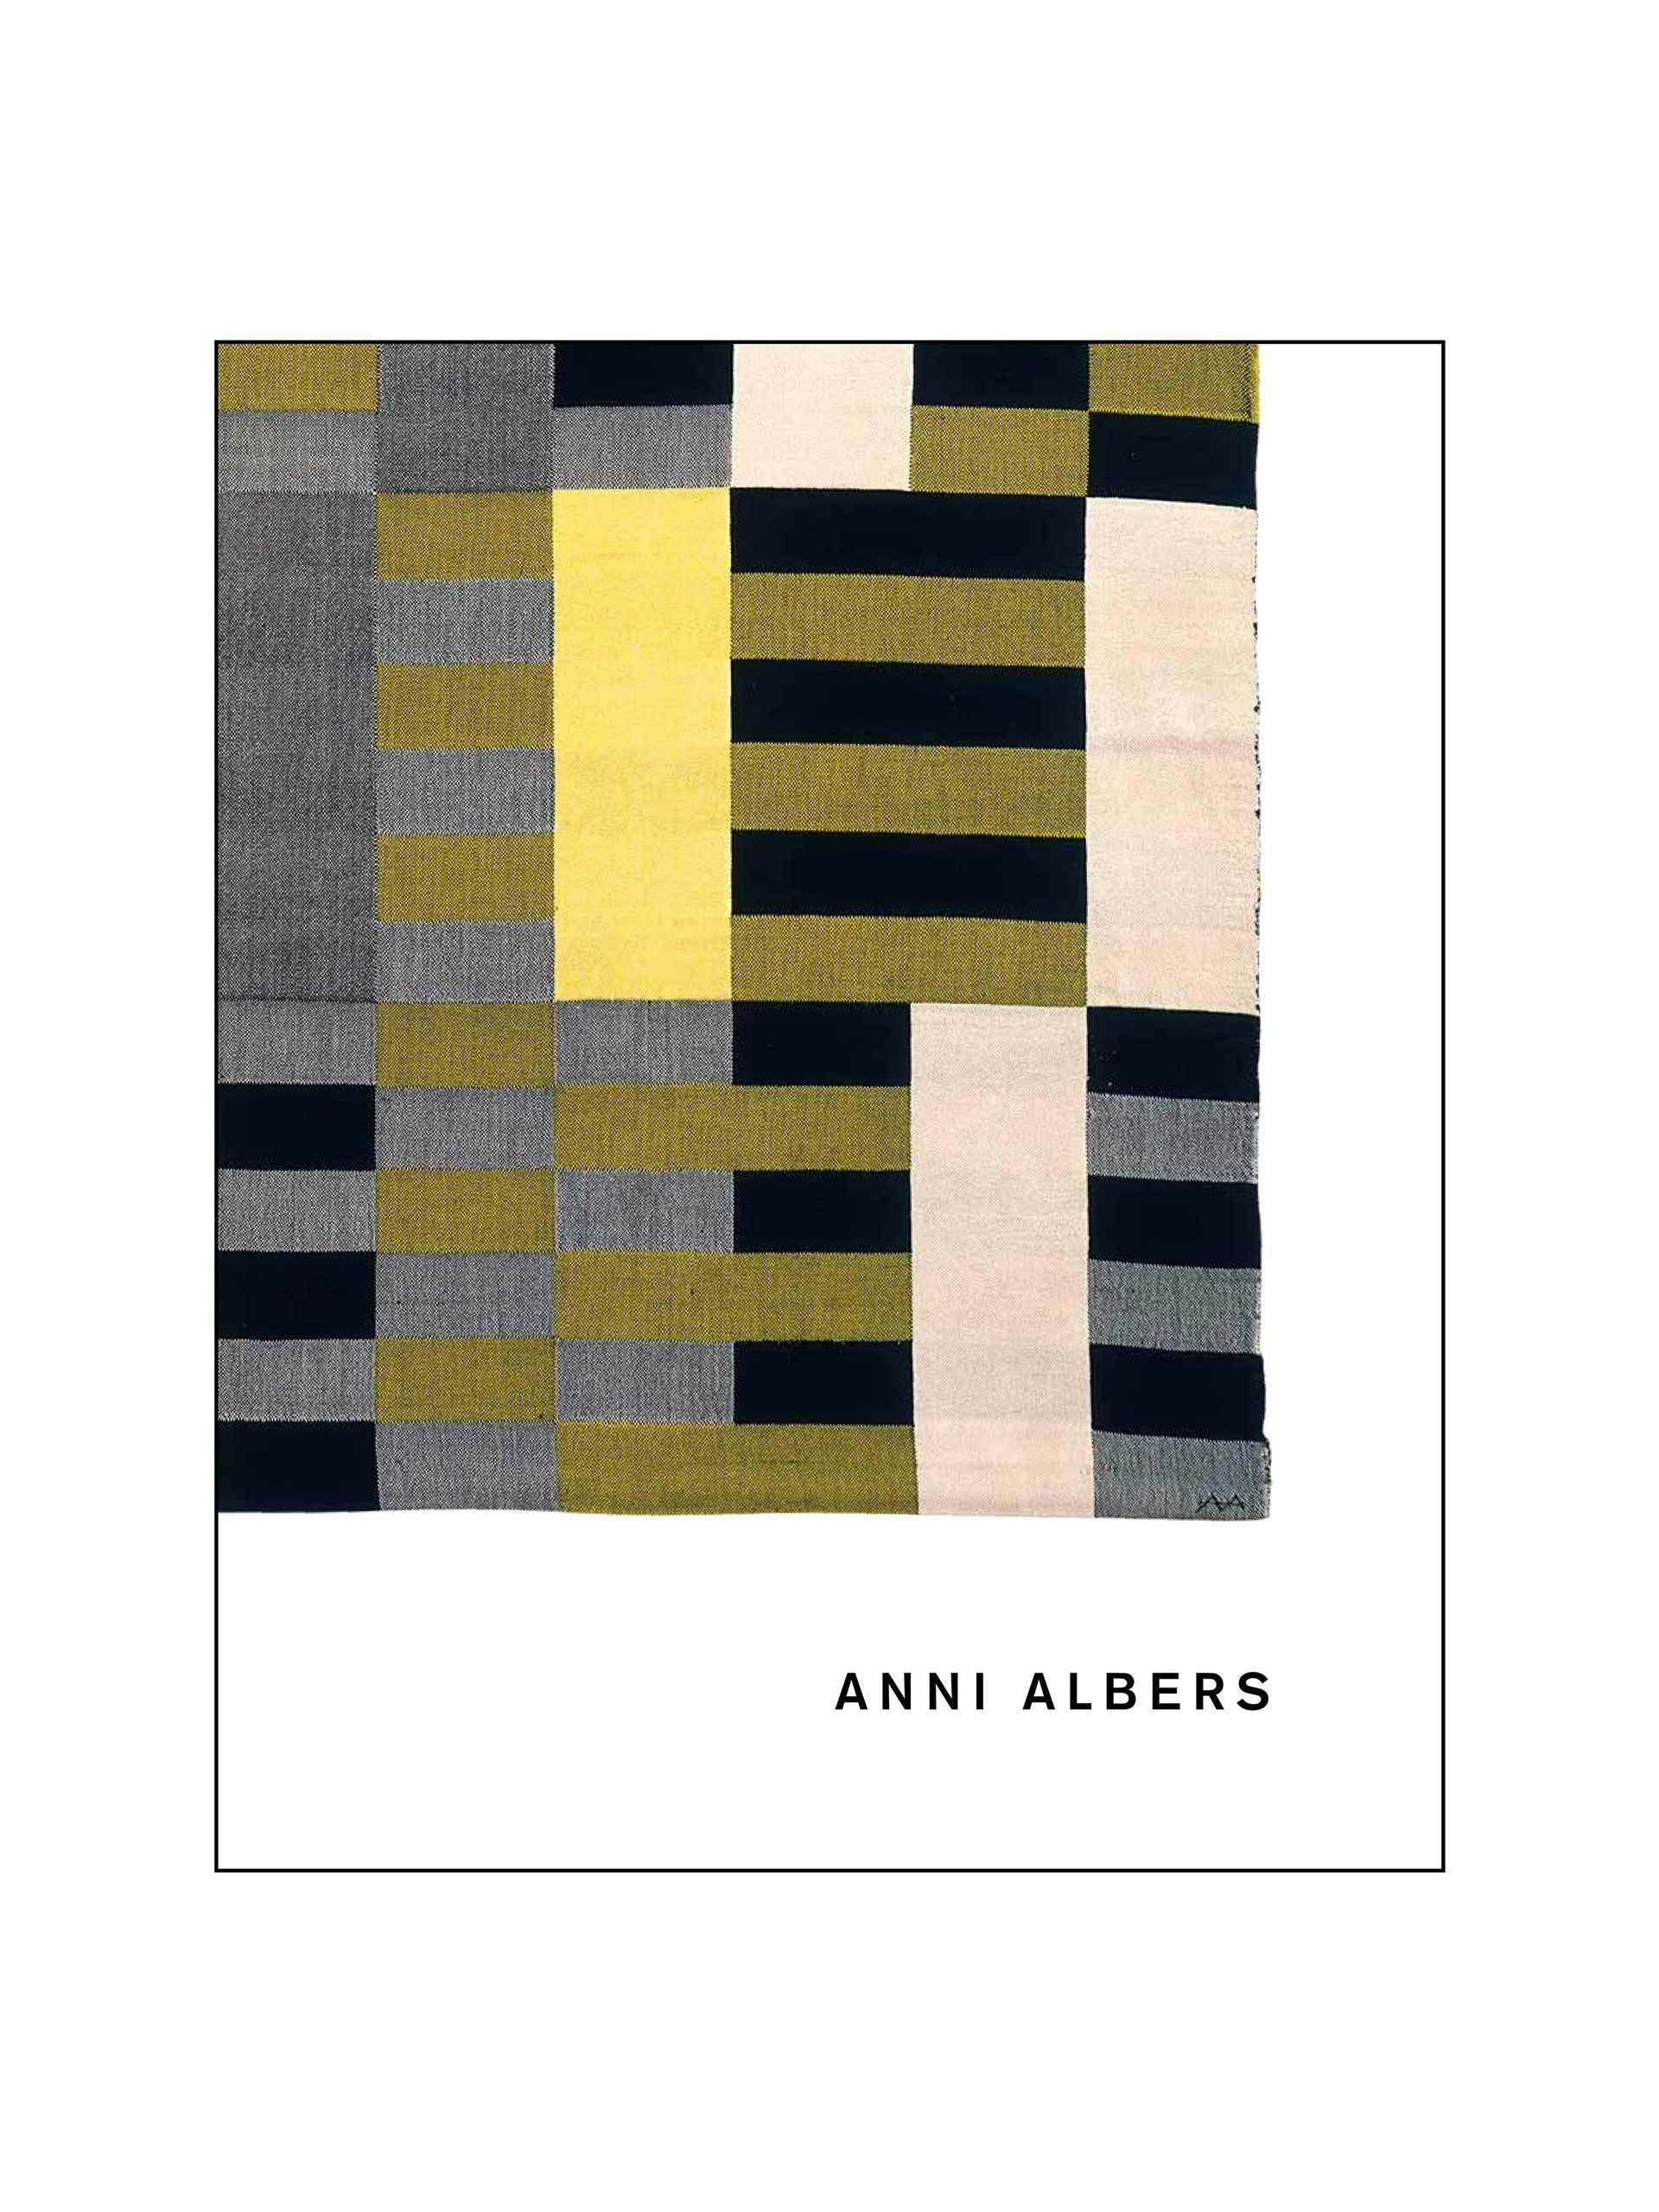 Anni Albers exhibition book